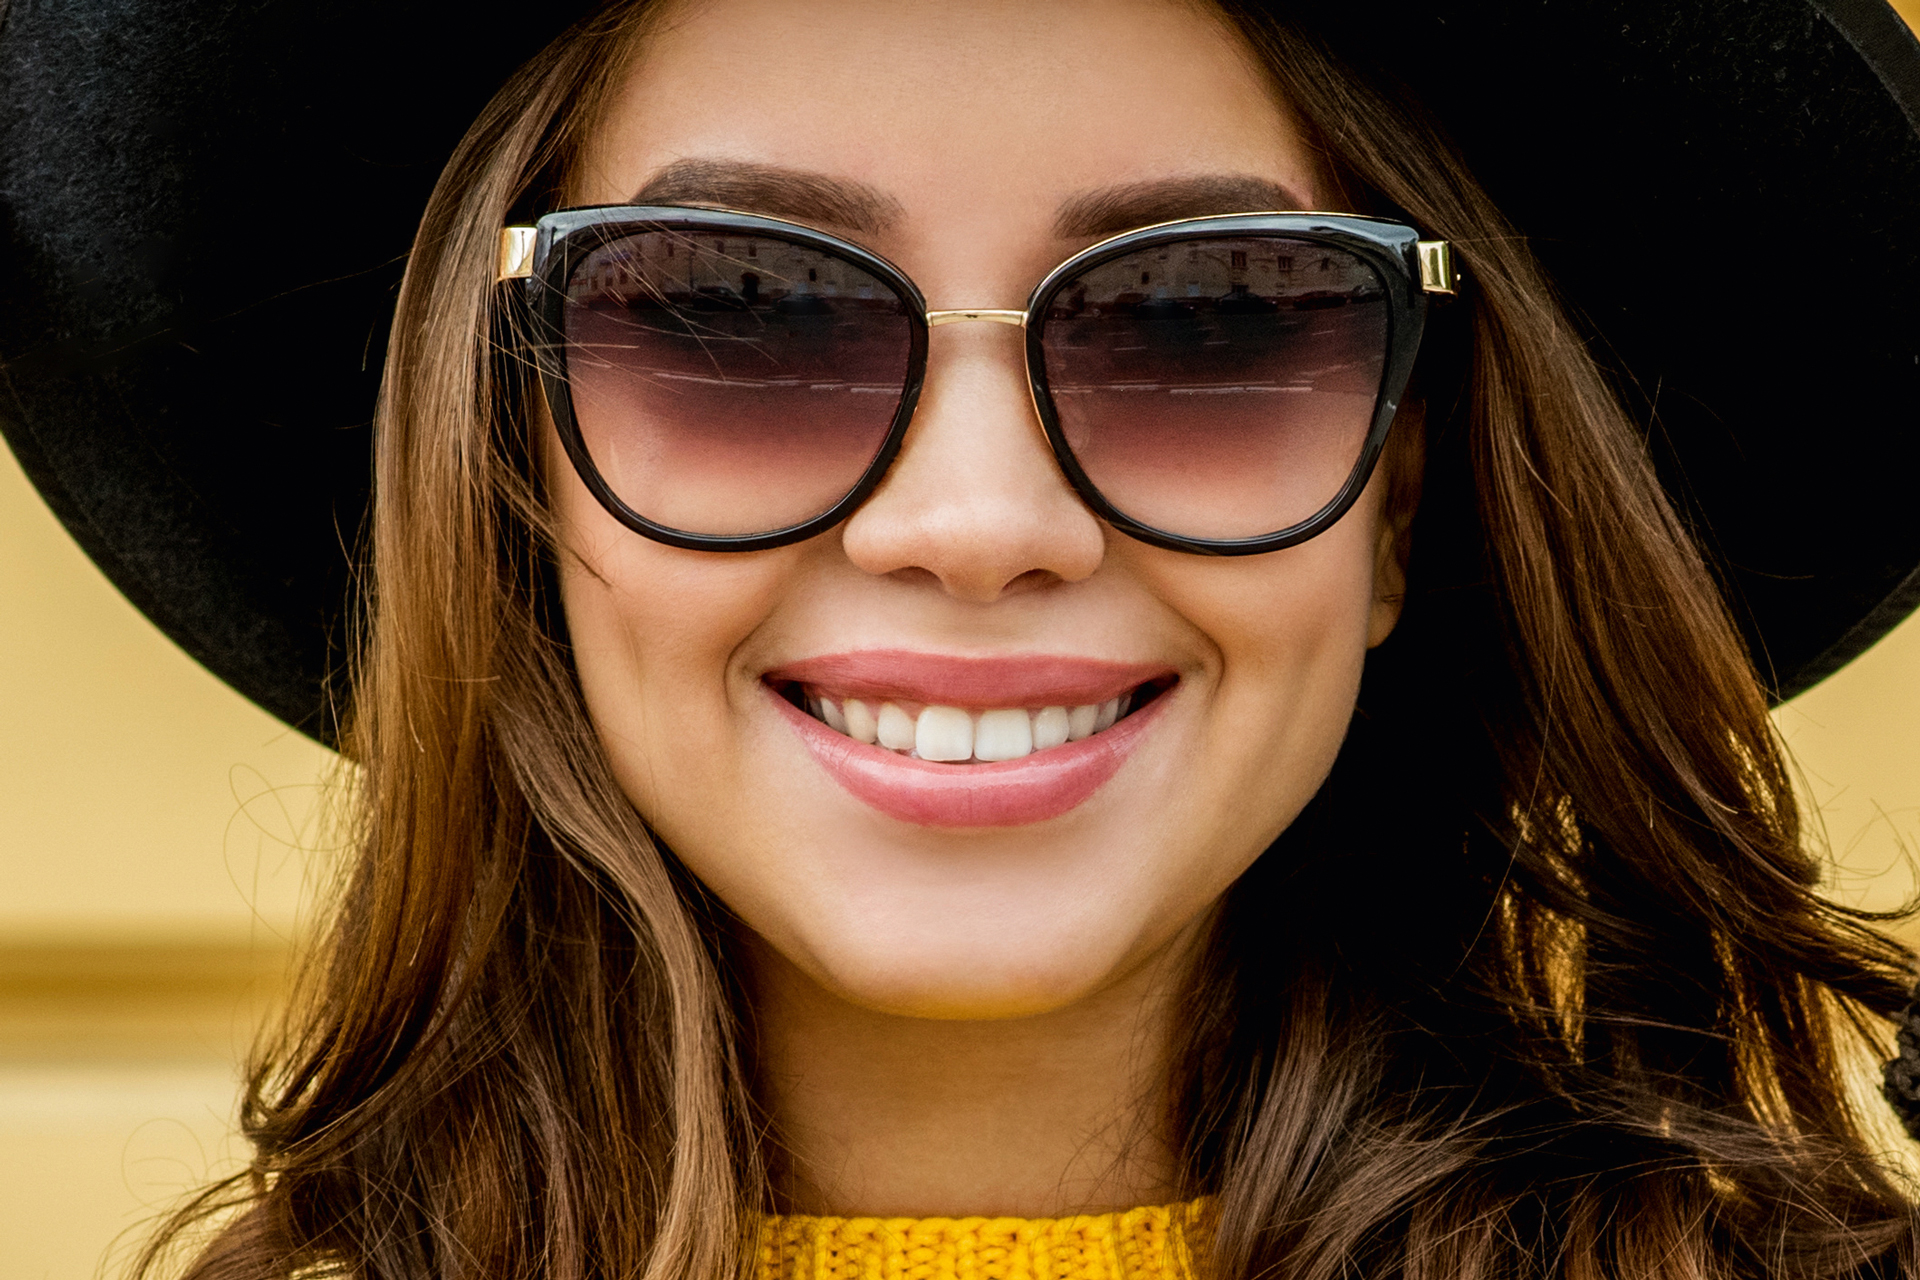 Les lunettes de soleil sont plus qu'un accessoire de mode : elles doivent protéger vos yeux des rayons UV nocifs.